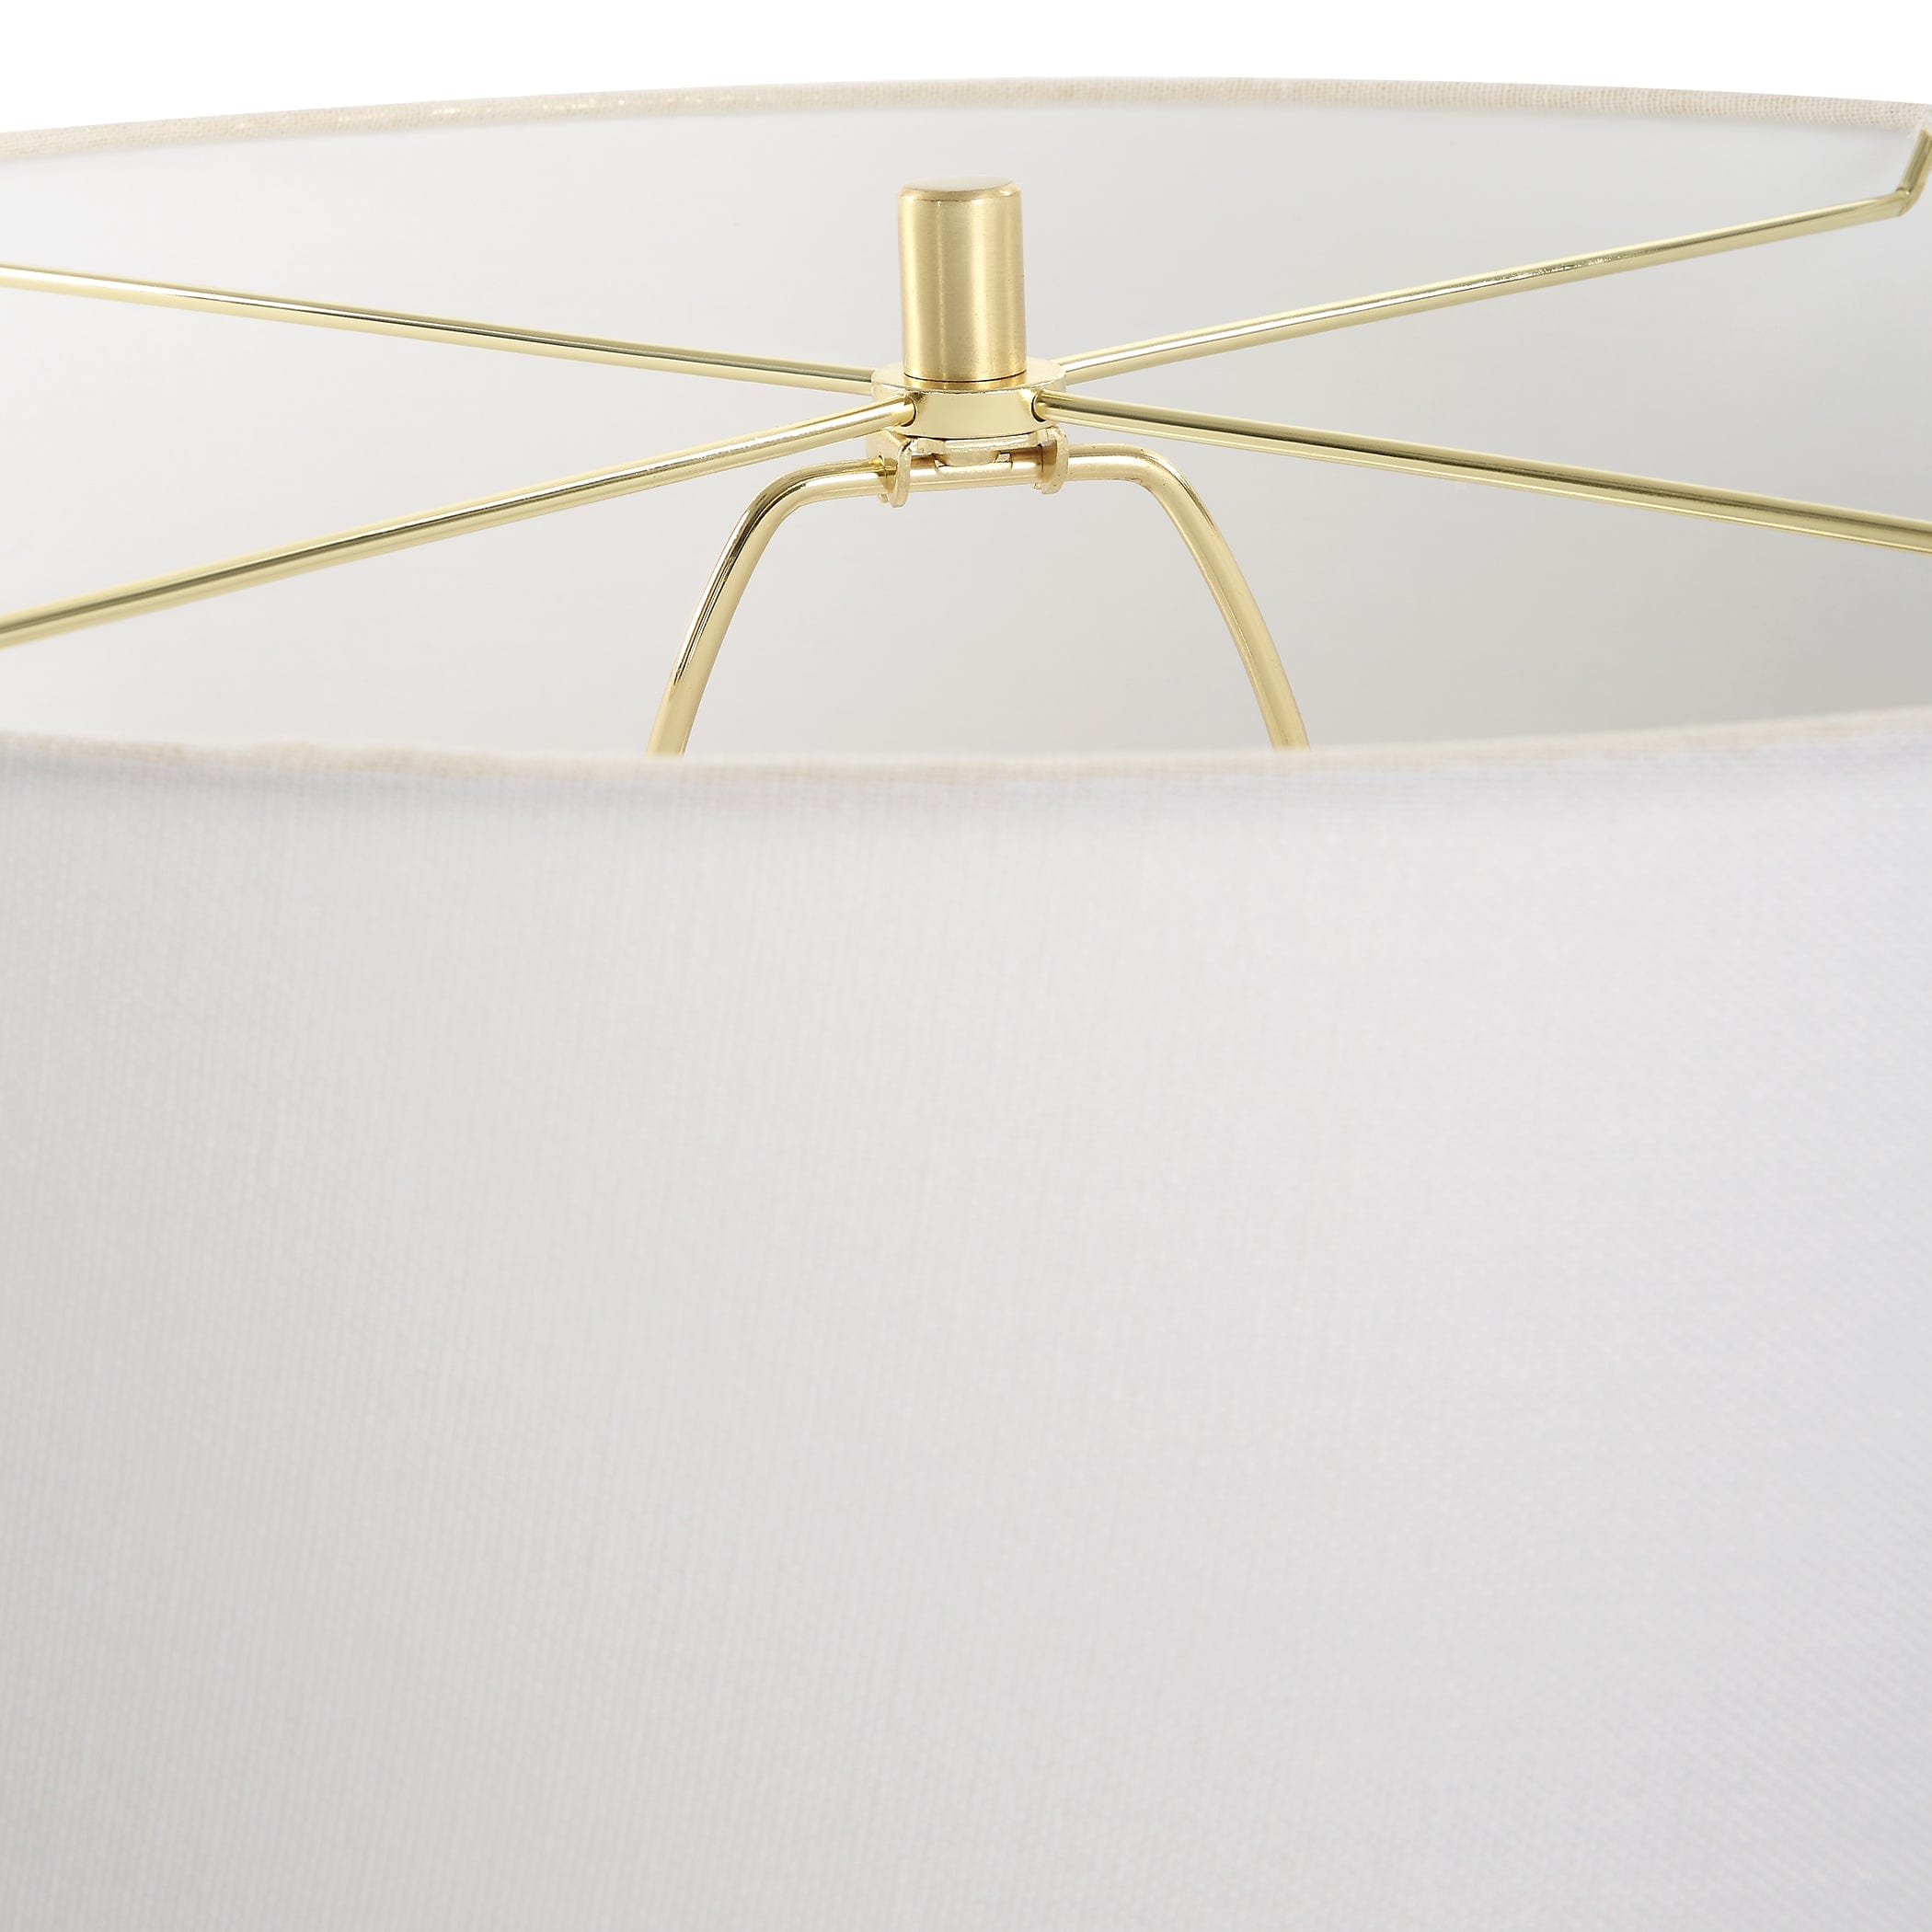 Adelaide White Table Lamp Uttermost